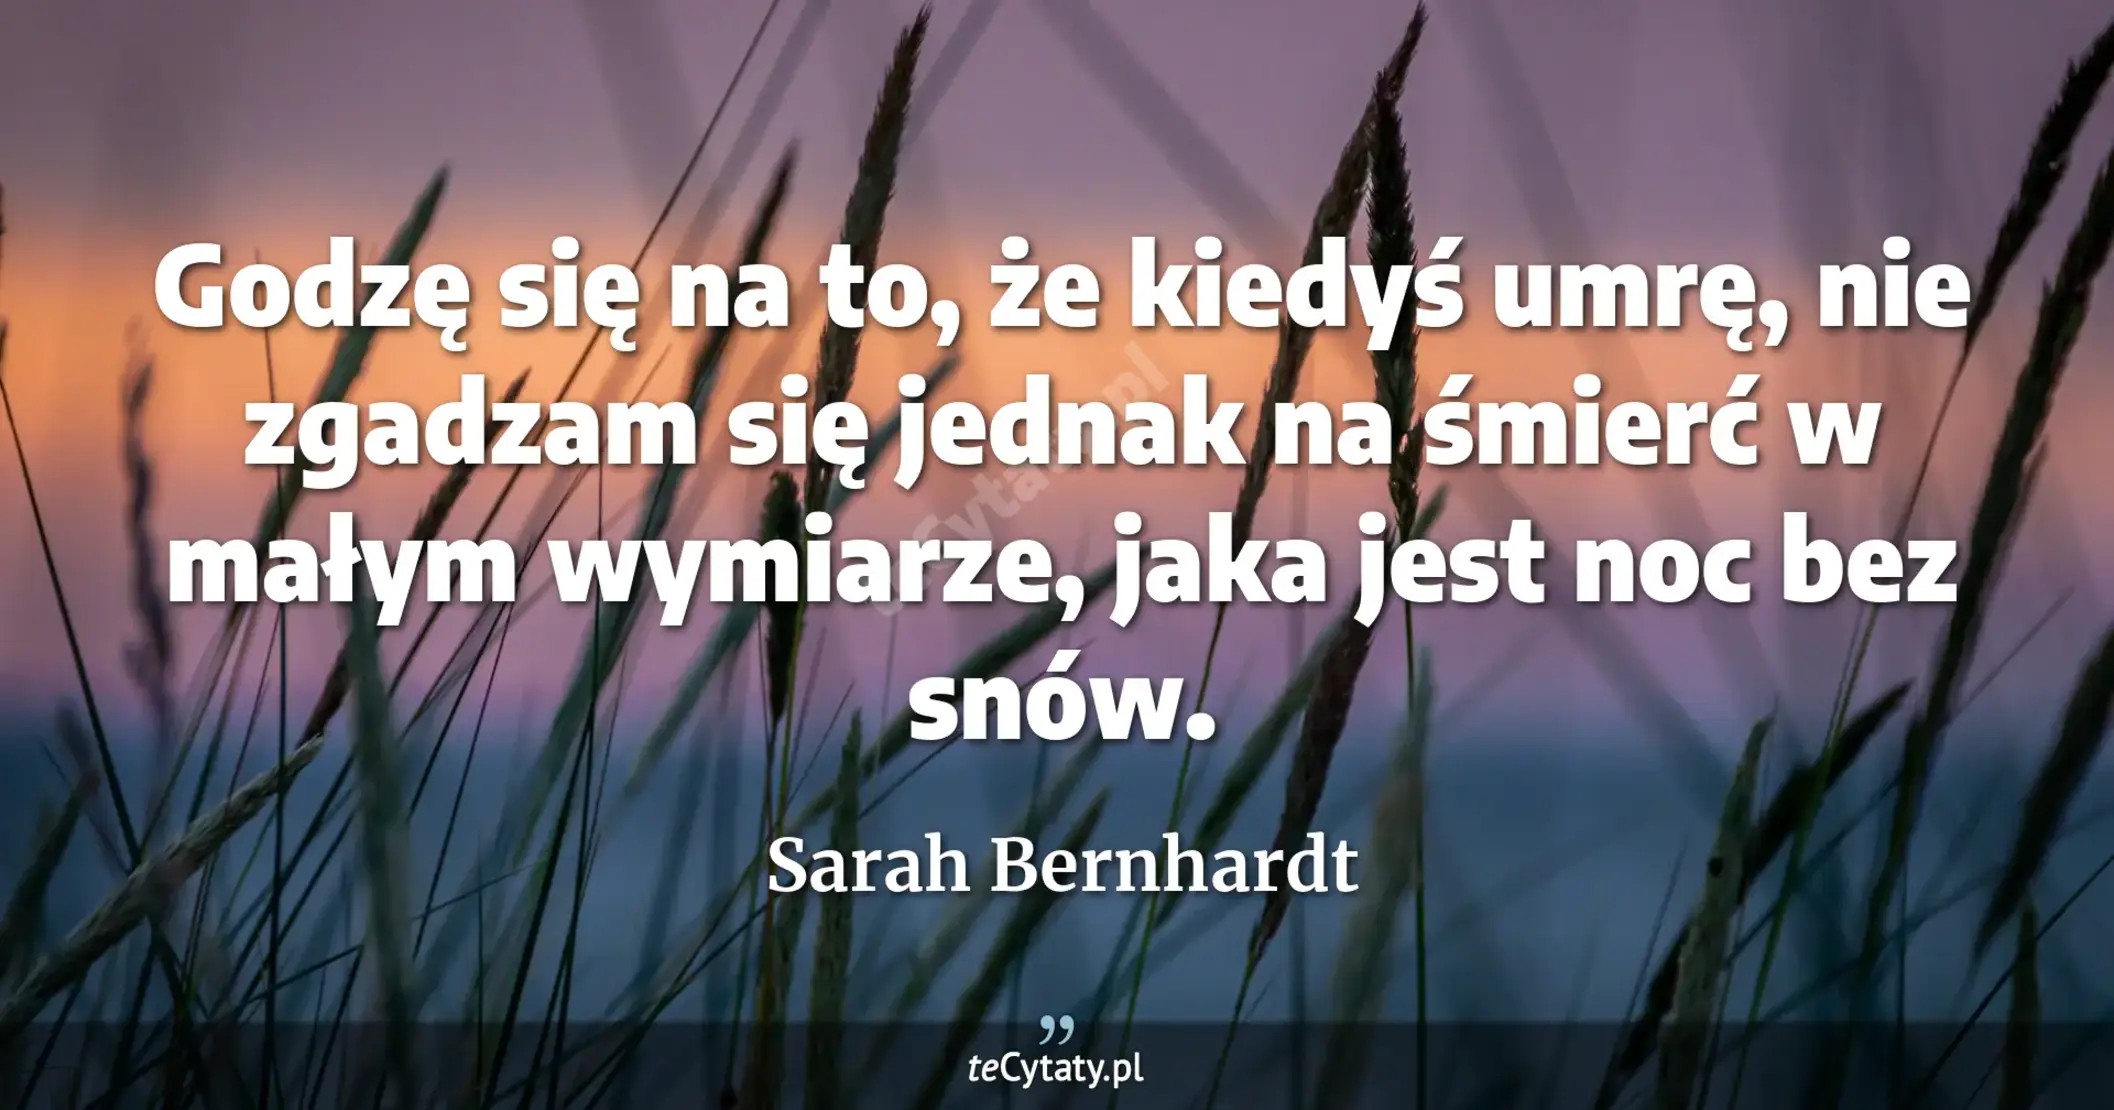 Godzę się na to, że kiedyś umrę, nie zgadzam się jednak na śmierć w małym wymiarze, jaka jest noc bez snów. - Sarah Bernhardt